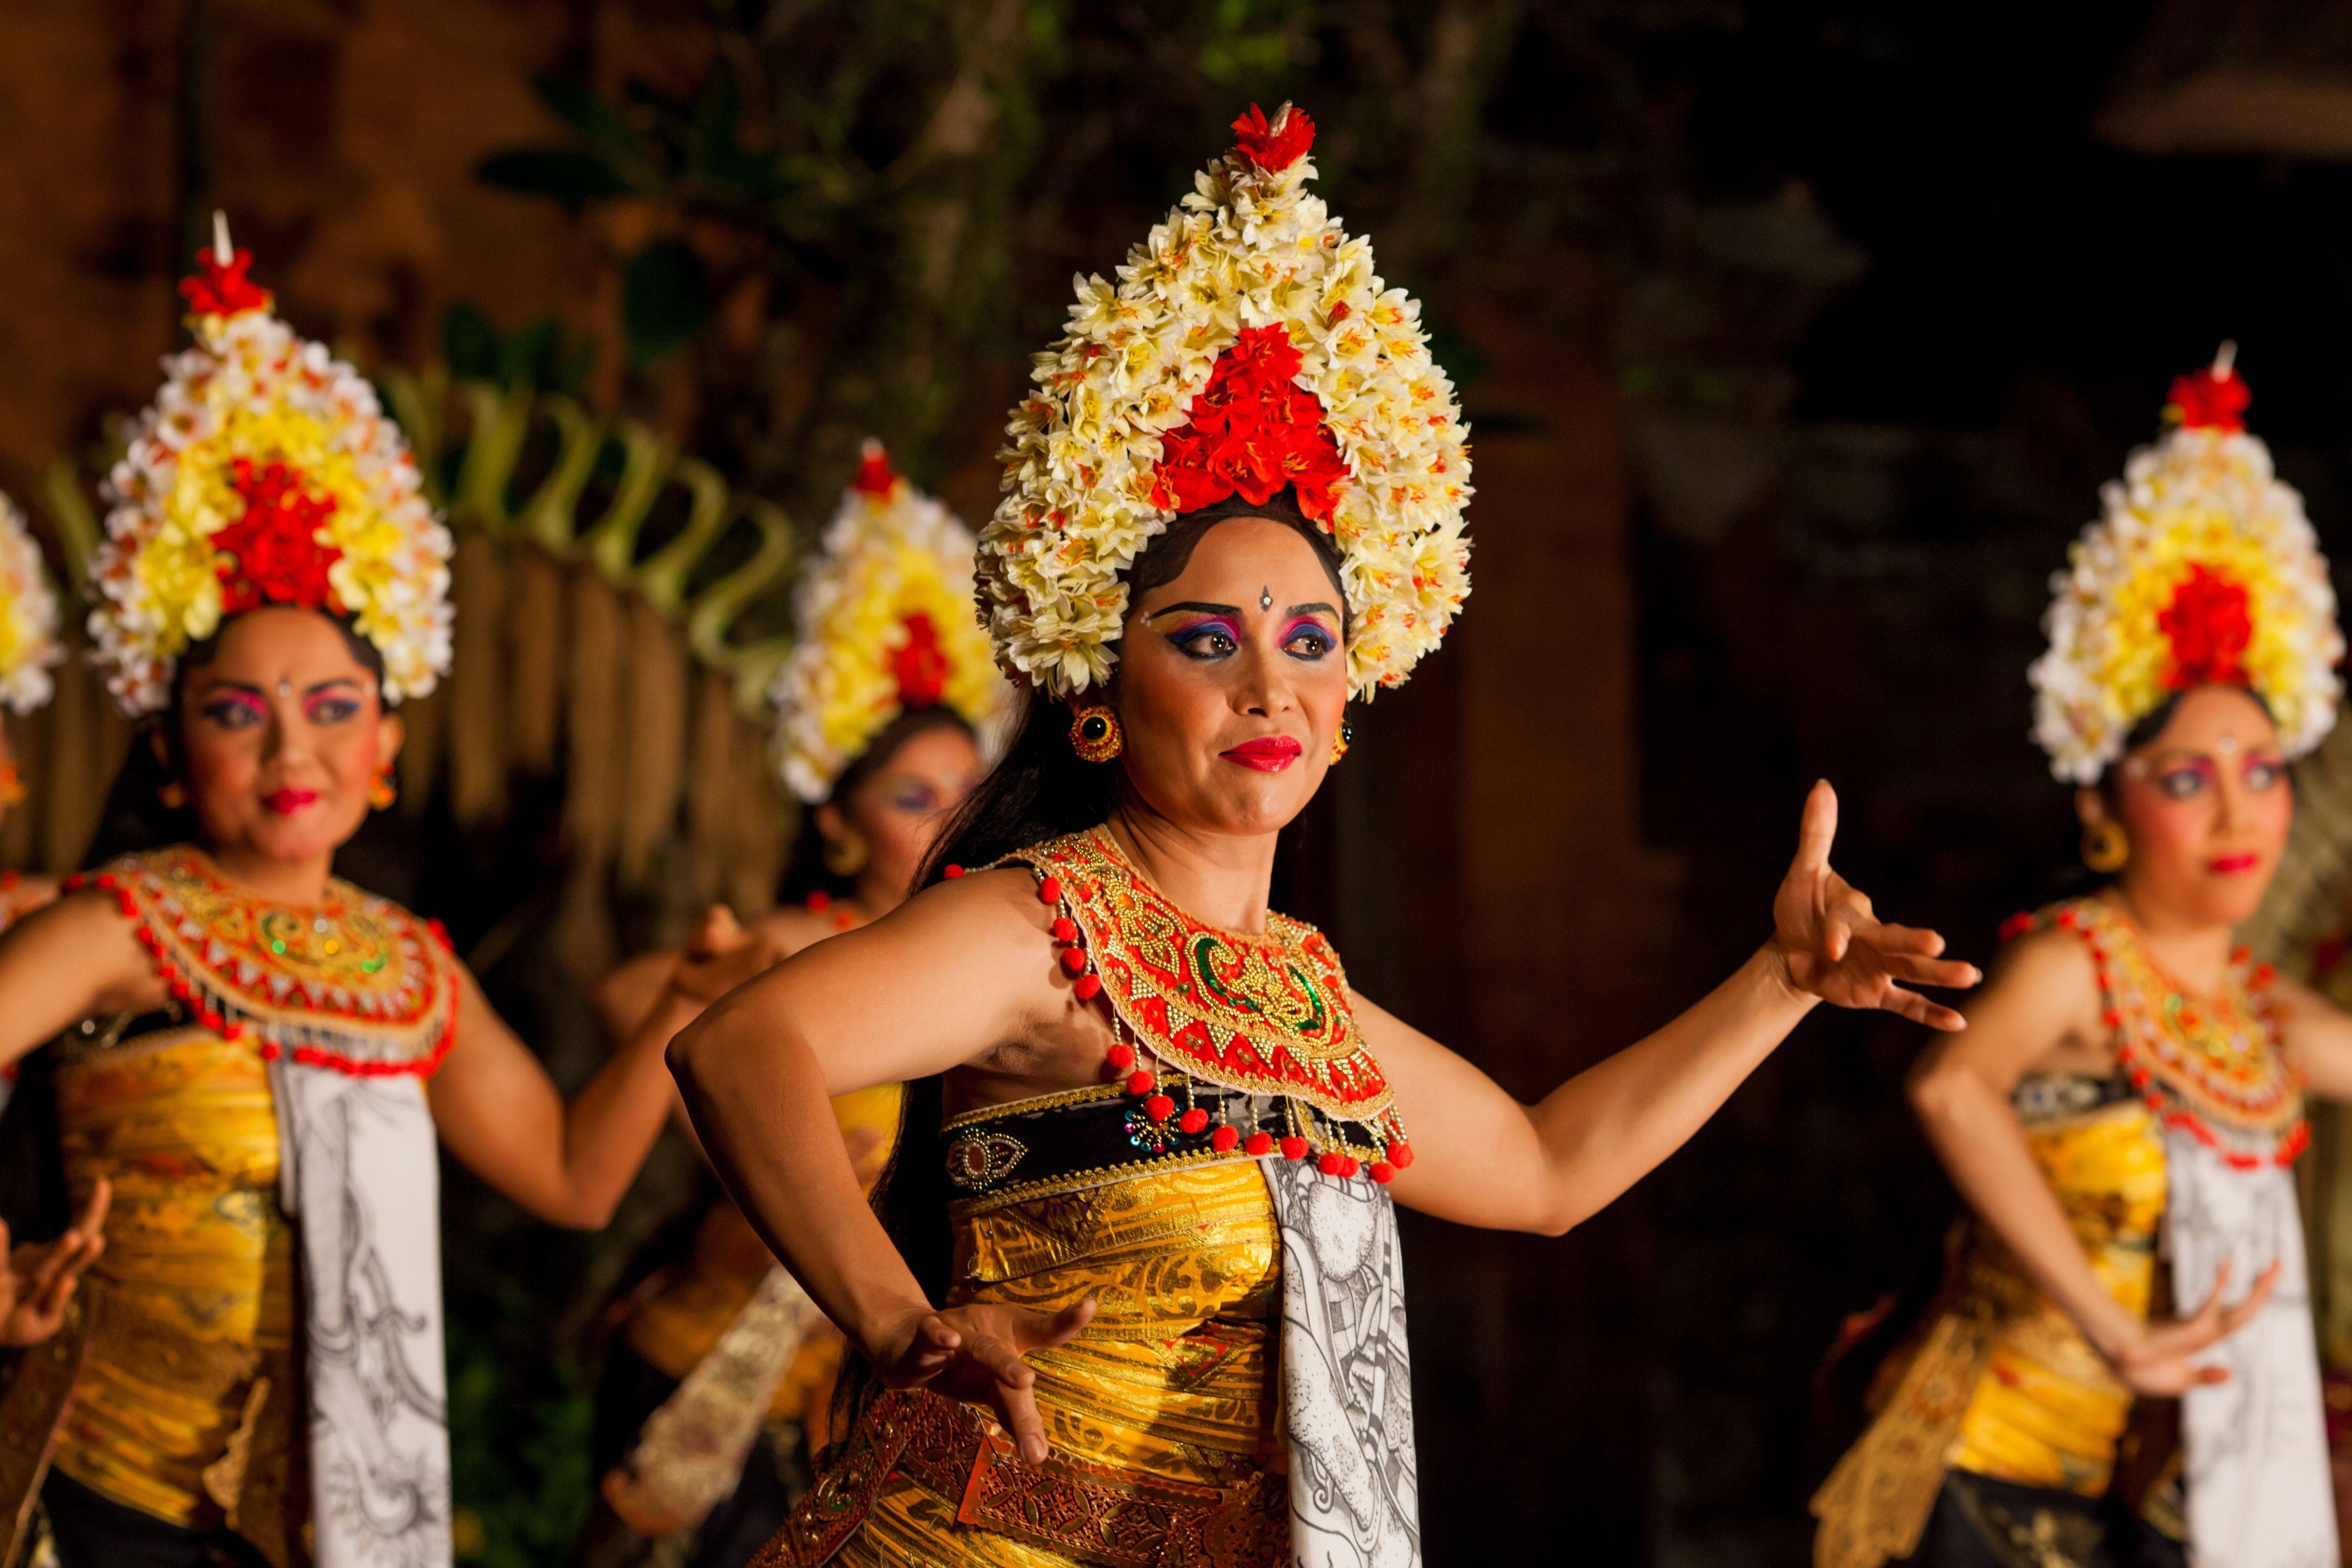 Местные уклады: традиционная свадьба на бали | balisha.ru — жизнь, люди, события и места острова бали